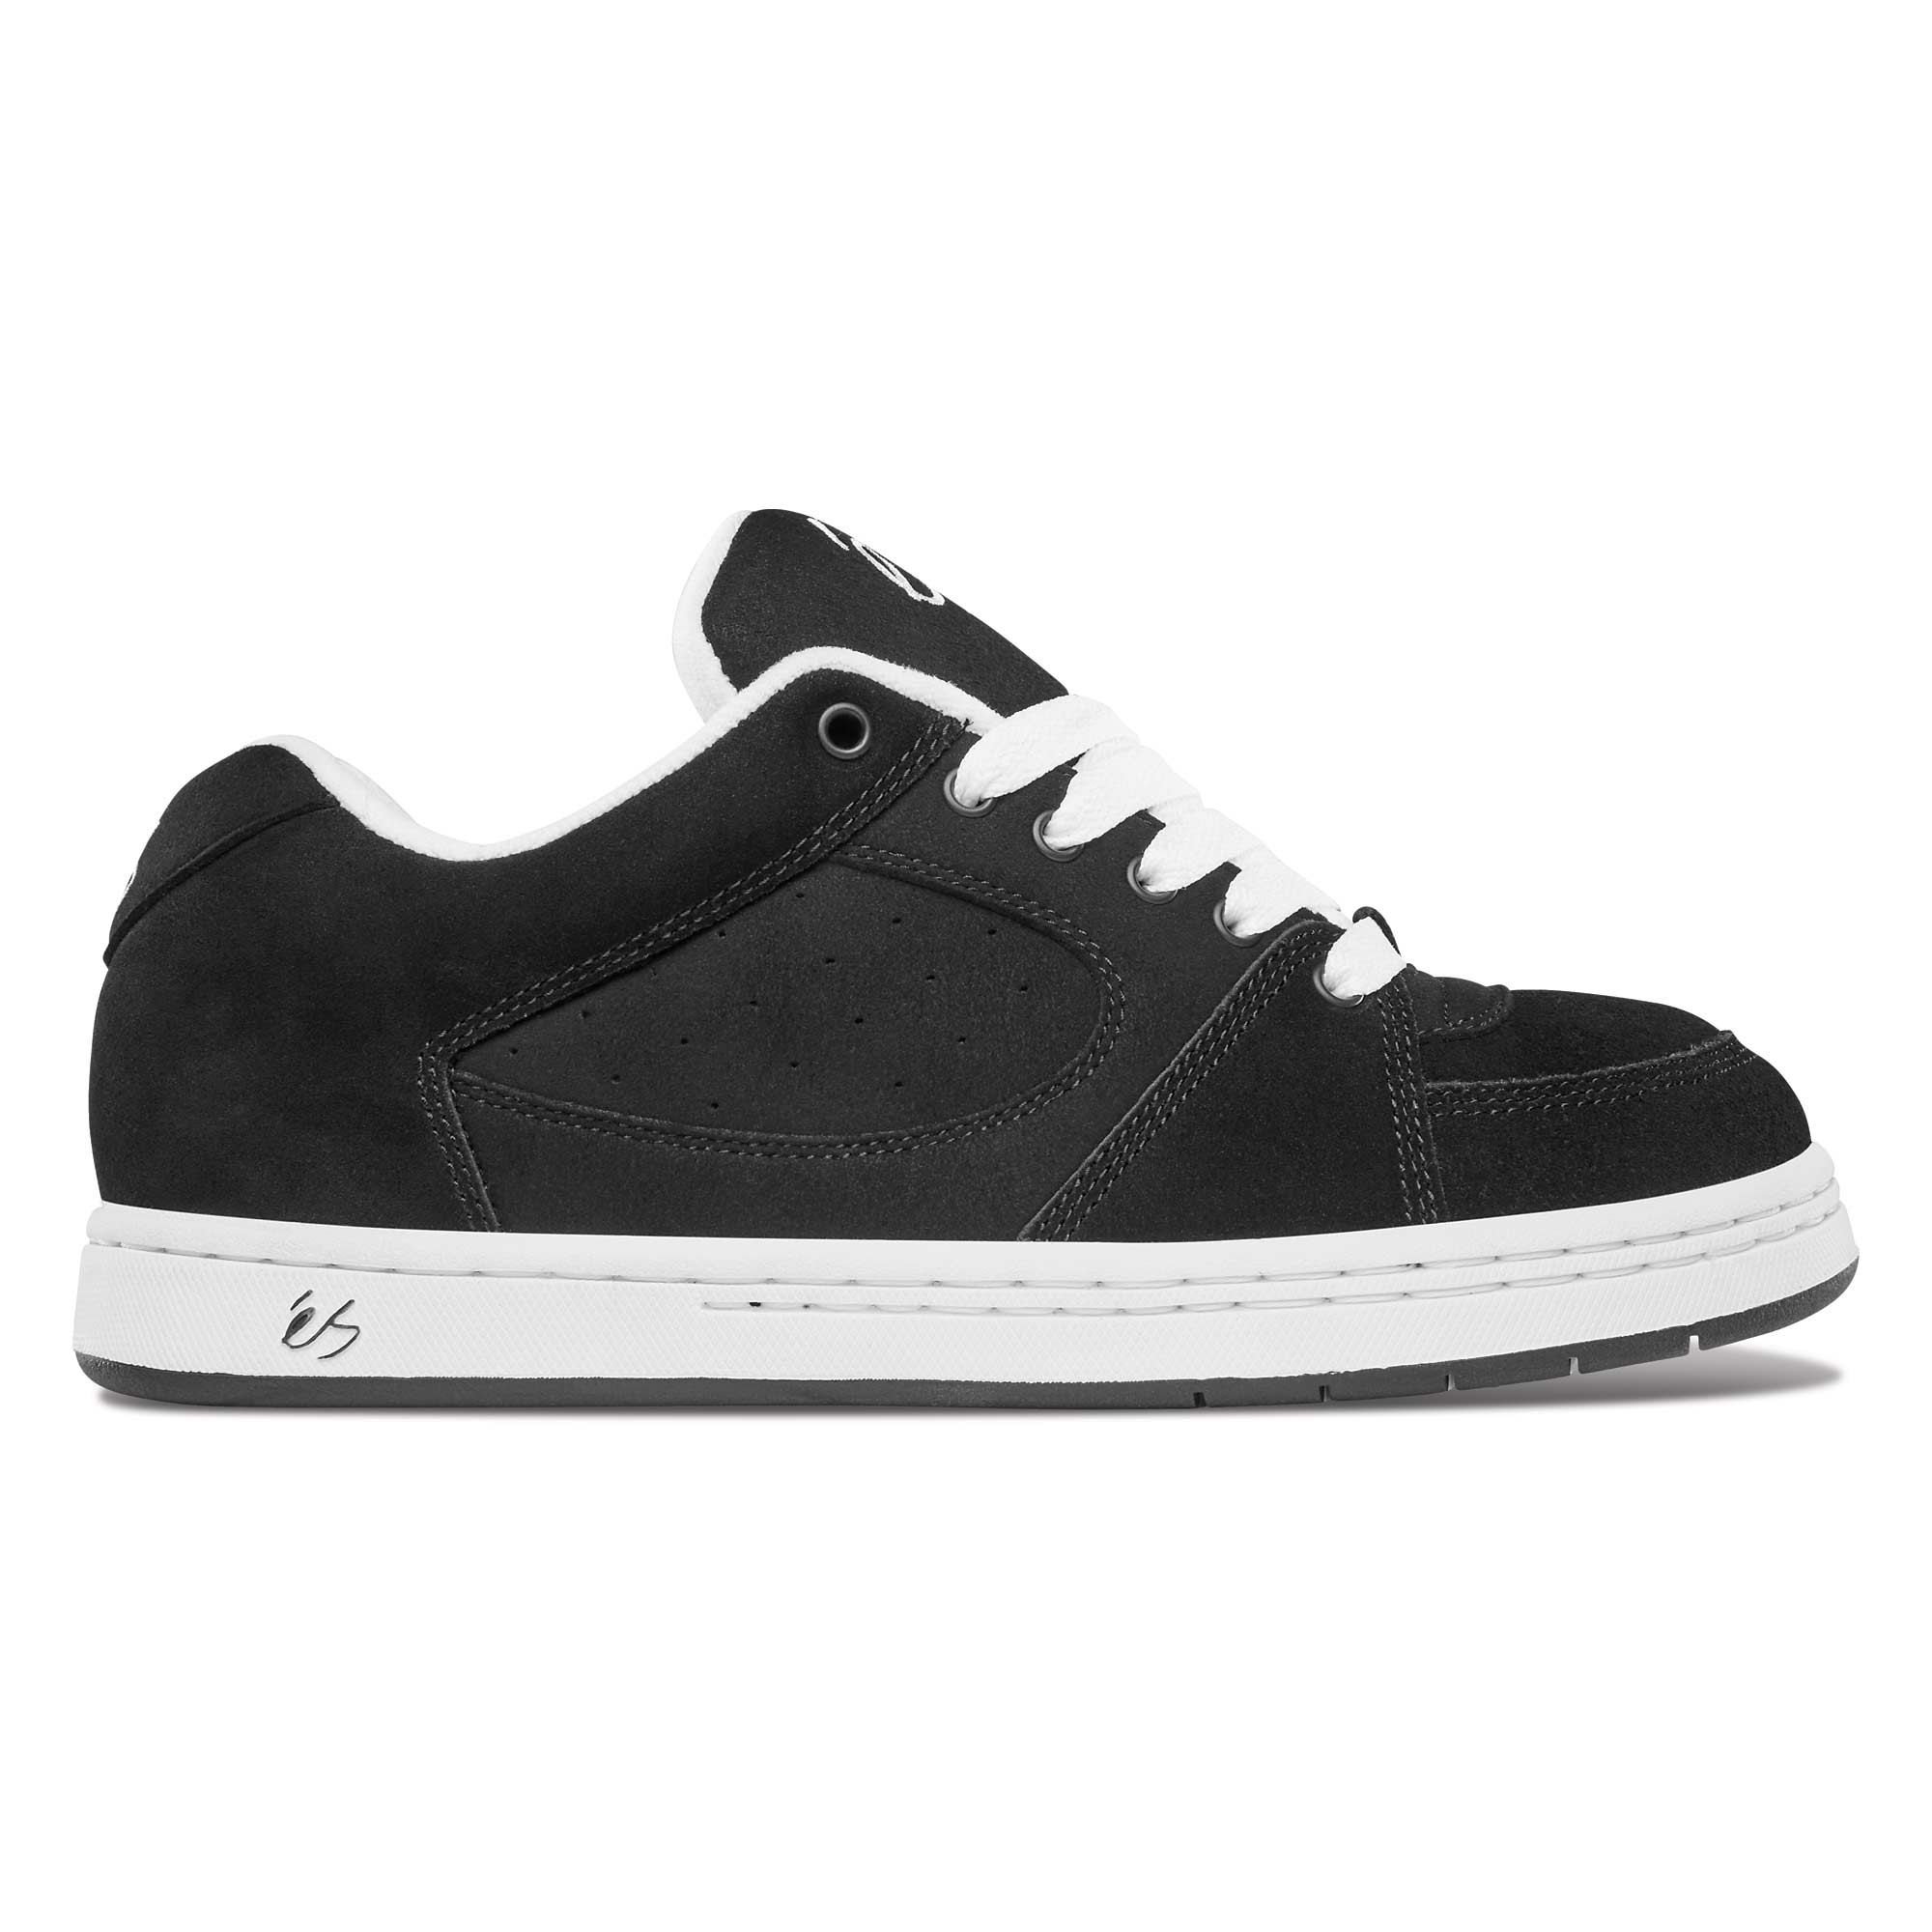 eS SKB Shoe ACCEL OG bla/whi/bla black/white/black